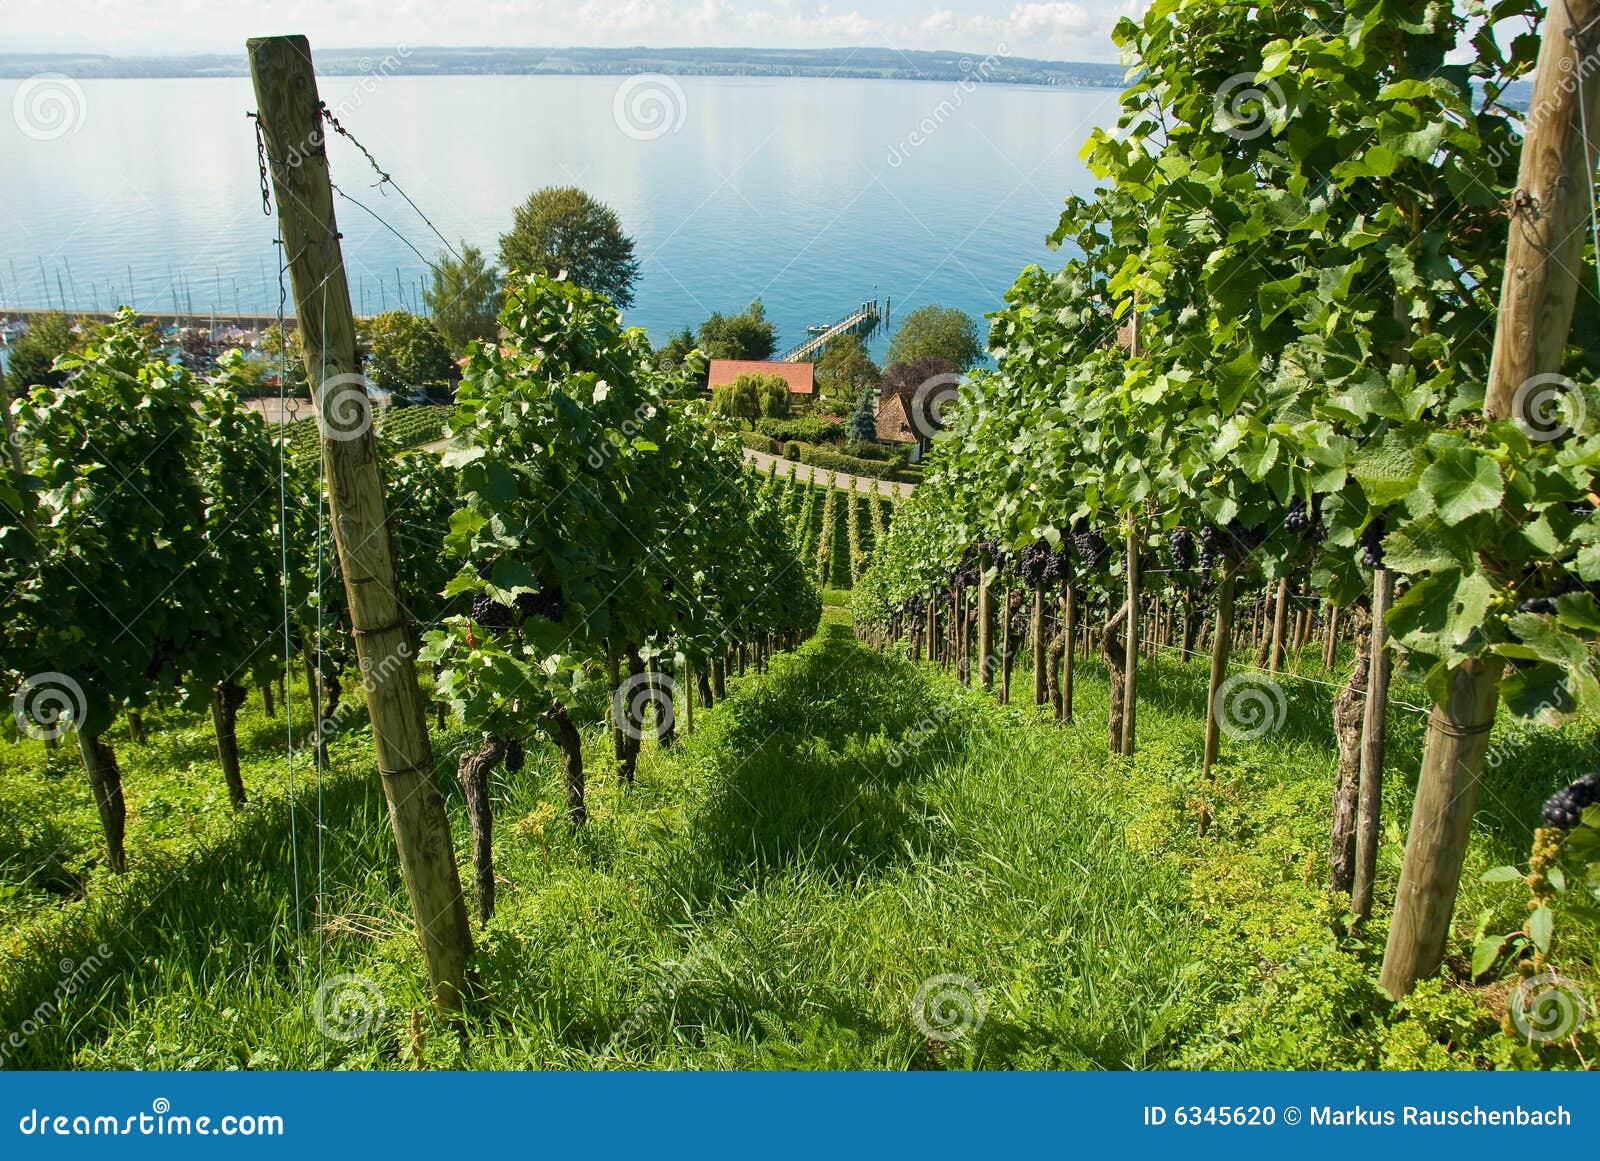 lake constance vineyard